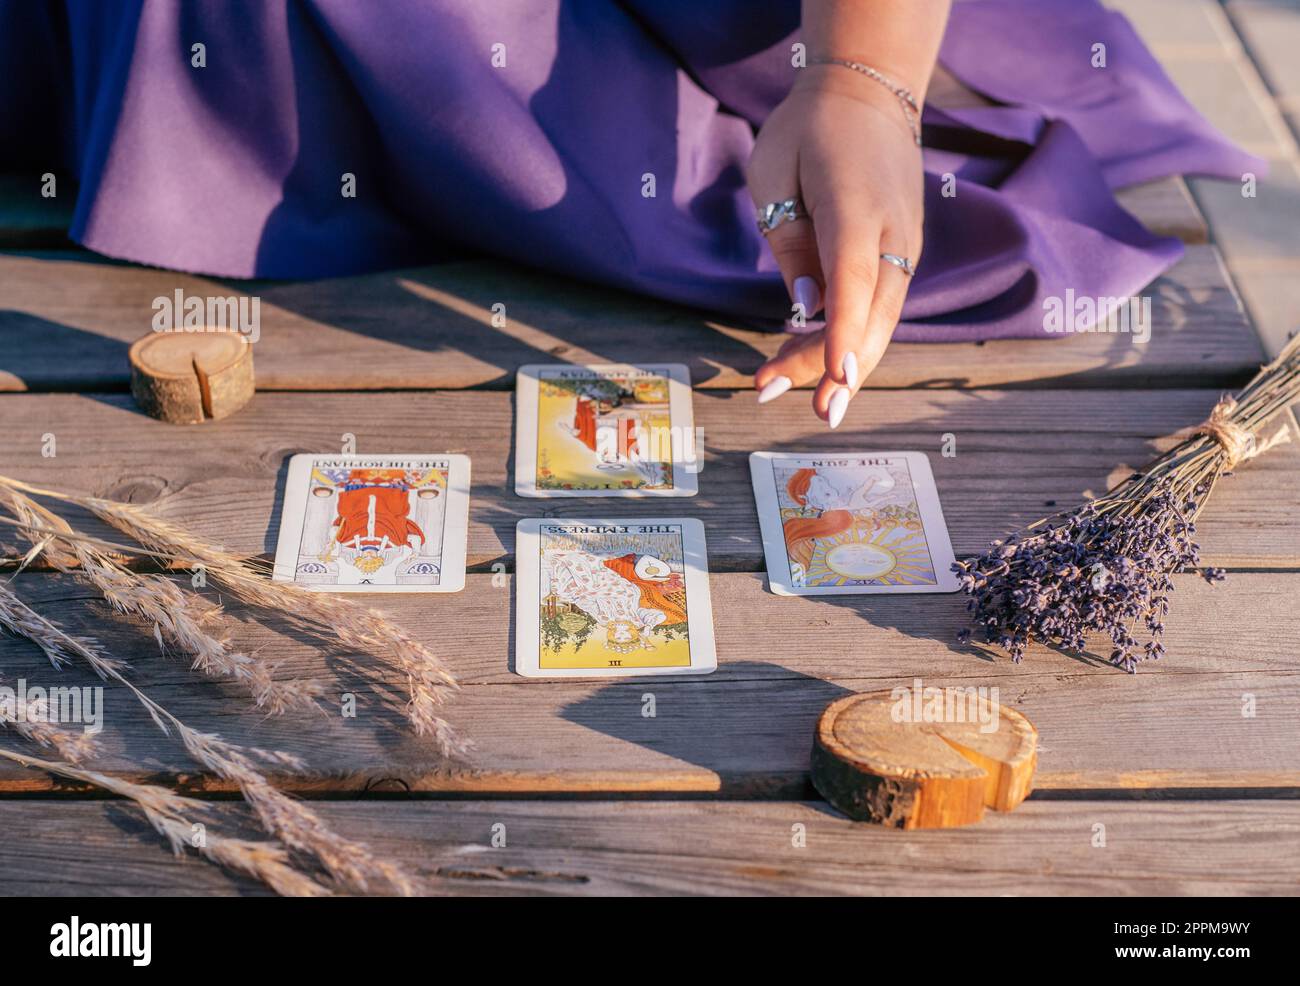 Die Hand einer Frau mit lila Nägeln zeigt auf vier Tarot-Karten, die auf einer Holzfläche neben Stacheln und Lavendel verteilt sind Stockfoto